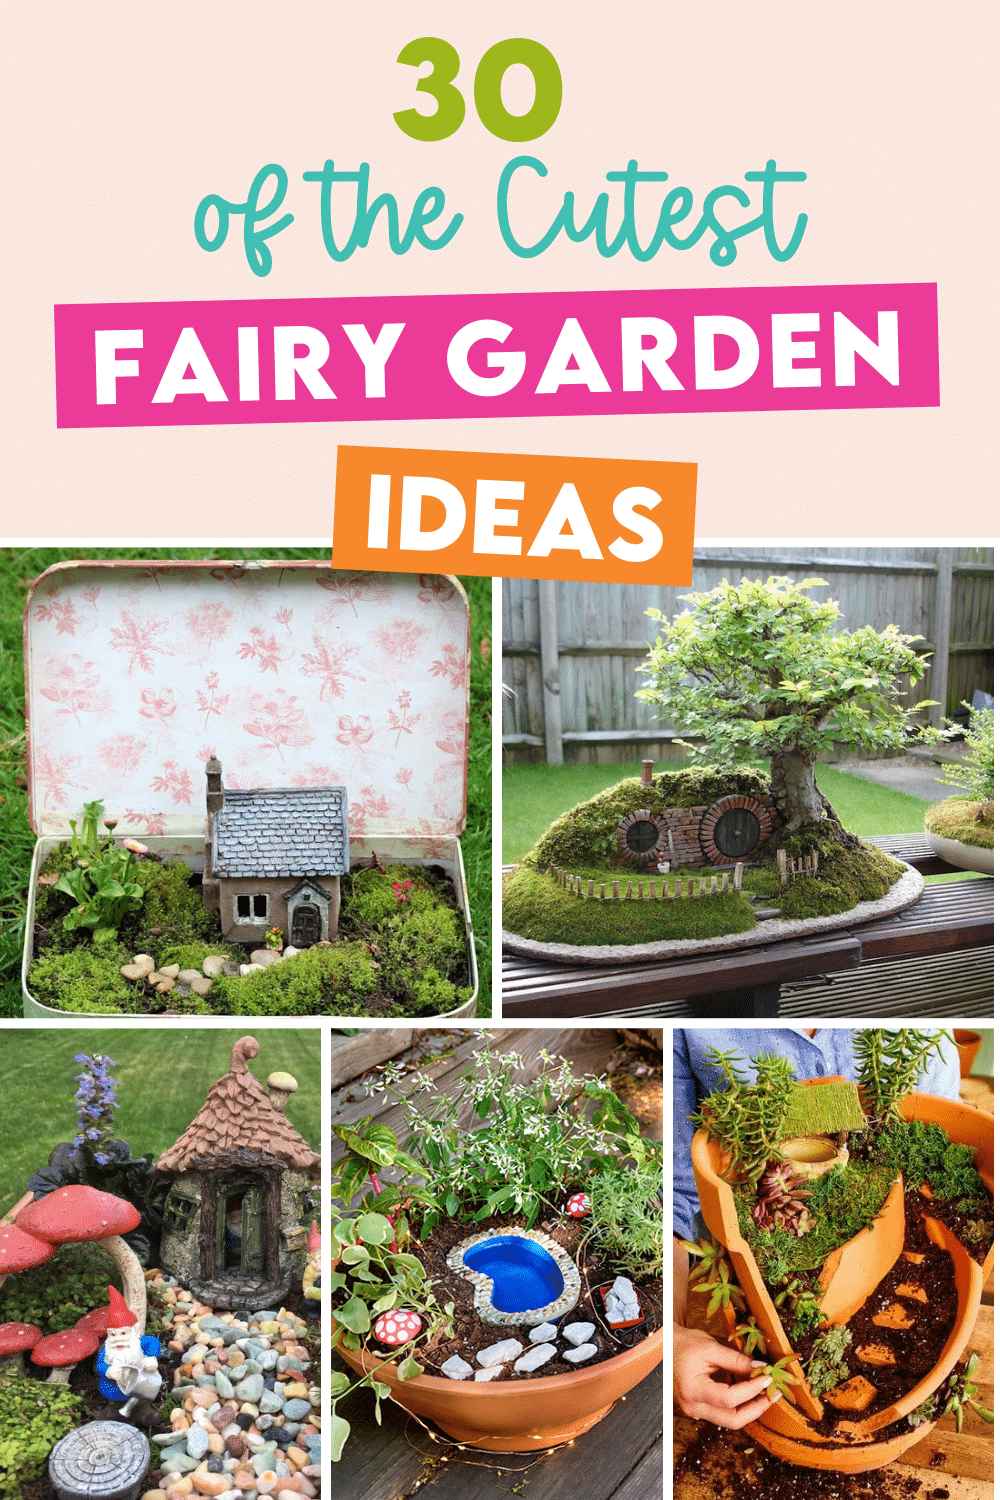 https://www.thedatingdivas.com/wp-content/uploads/2023/01/30-Cutest-Fairy-Garden-Ideas.png